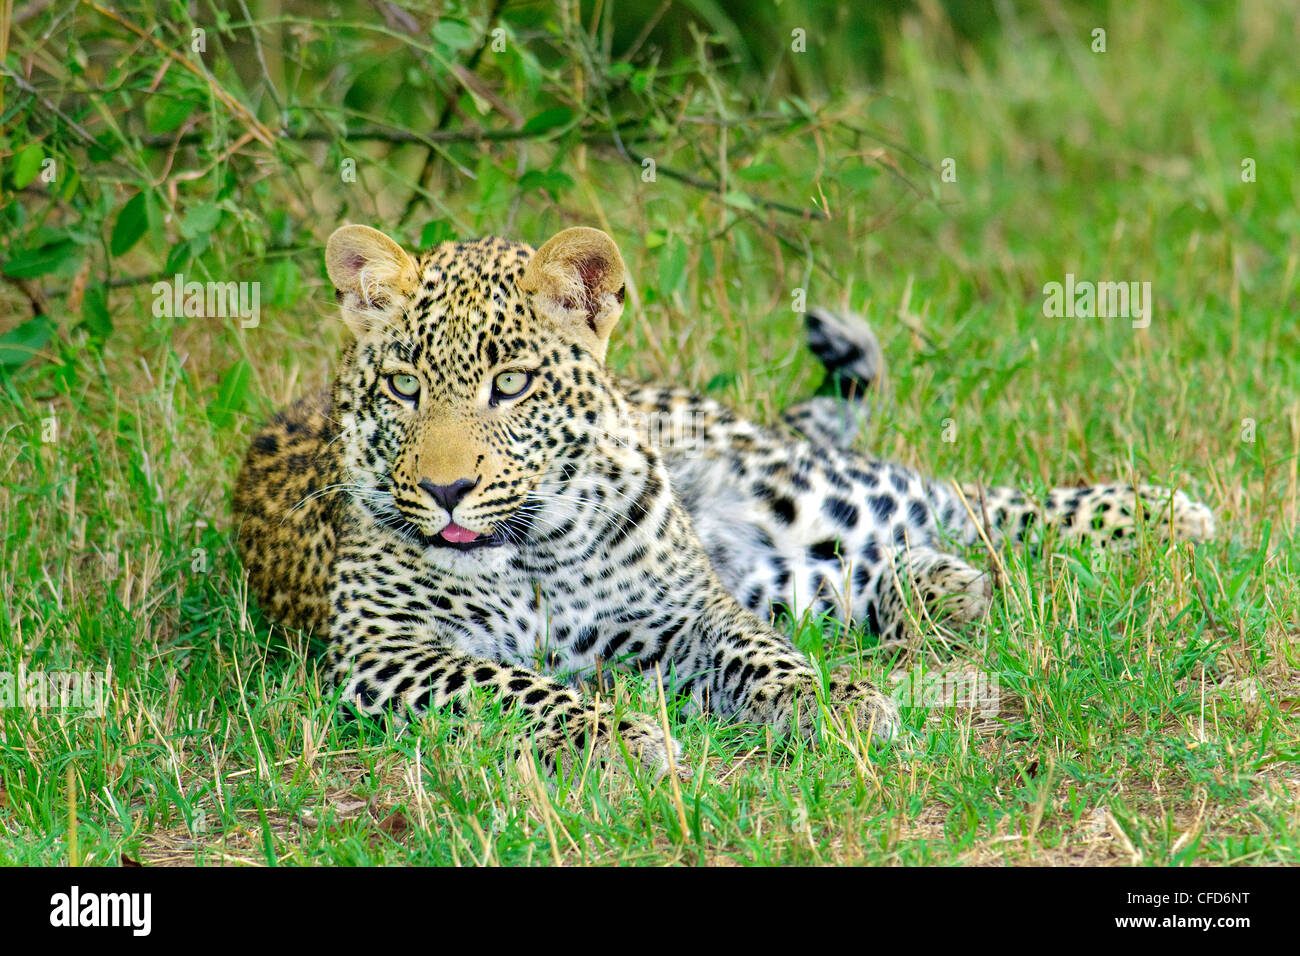 Yearling léopard (Panthera pardus) cub, réserve de Masai Mara, Kenya, Afrique de l'Est Banque D'Images